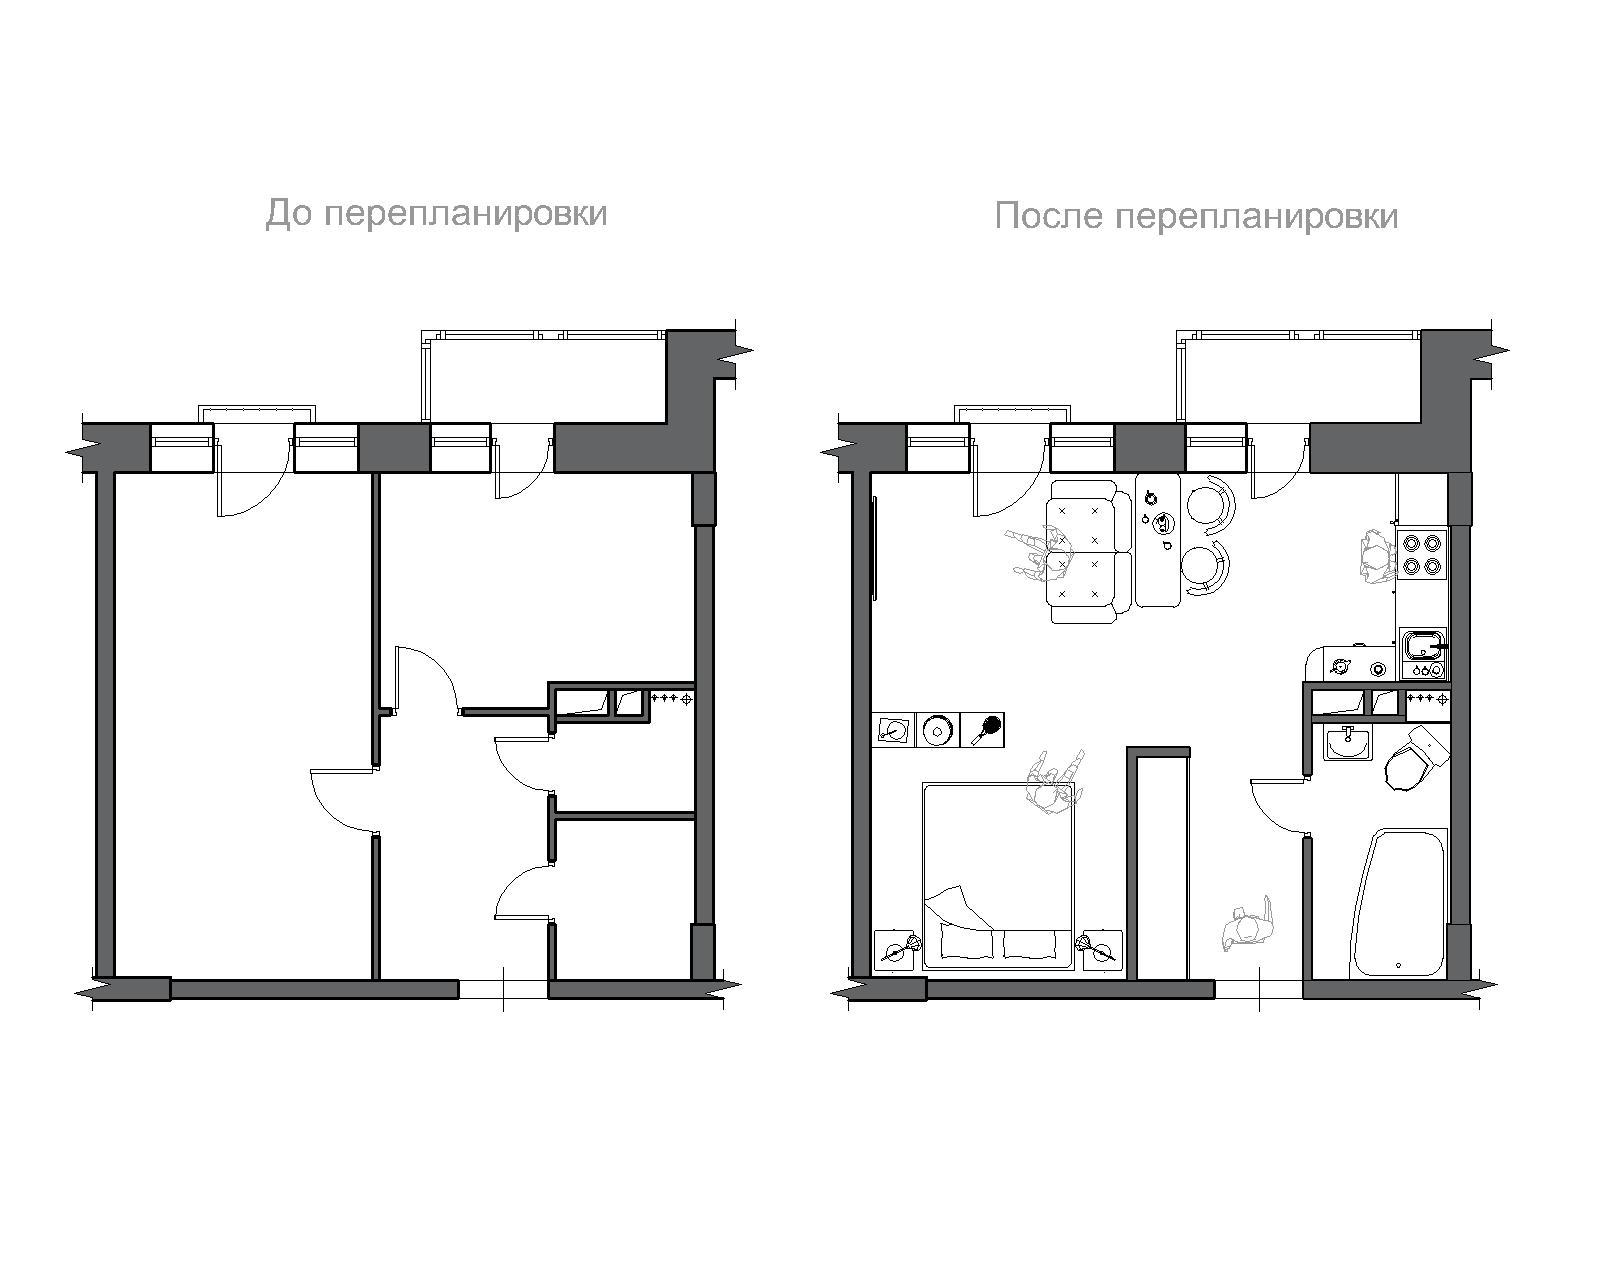 Образцы перепланировки квартир